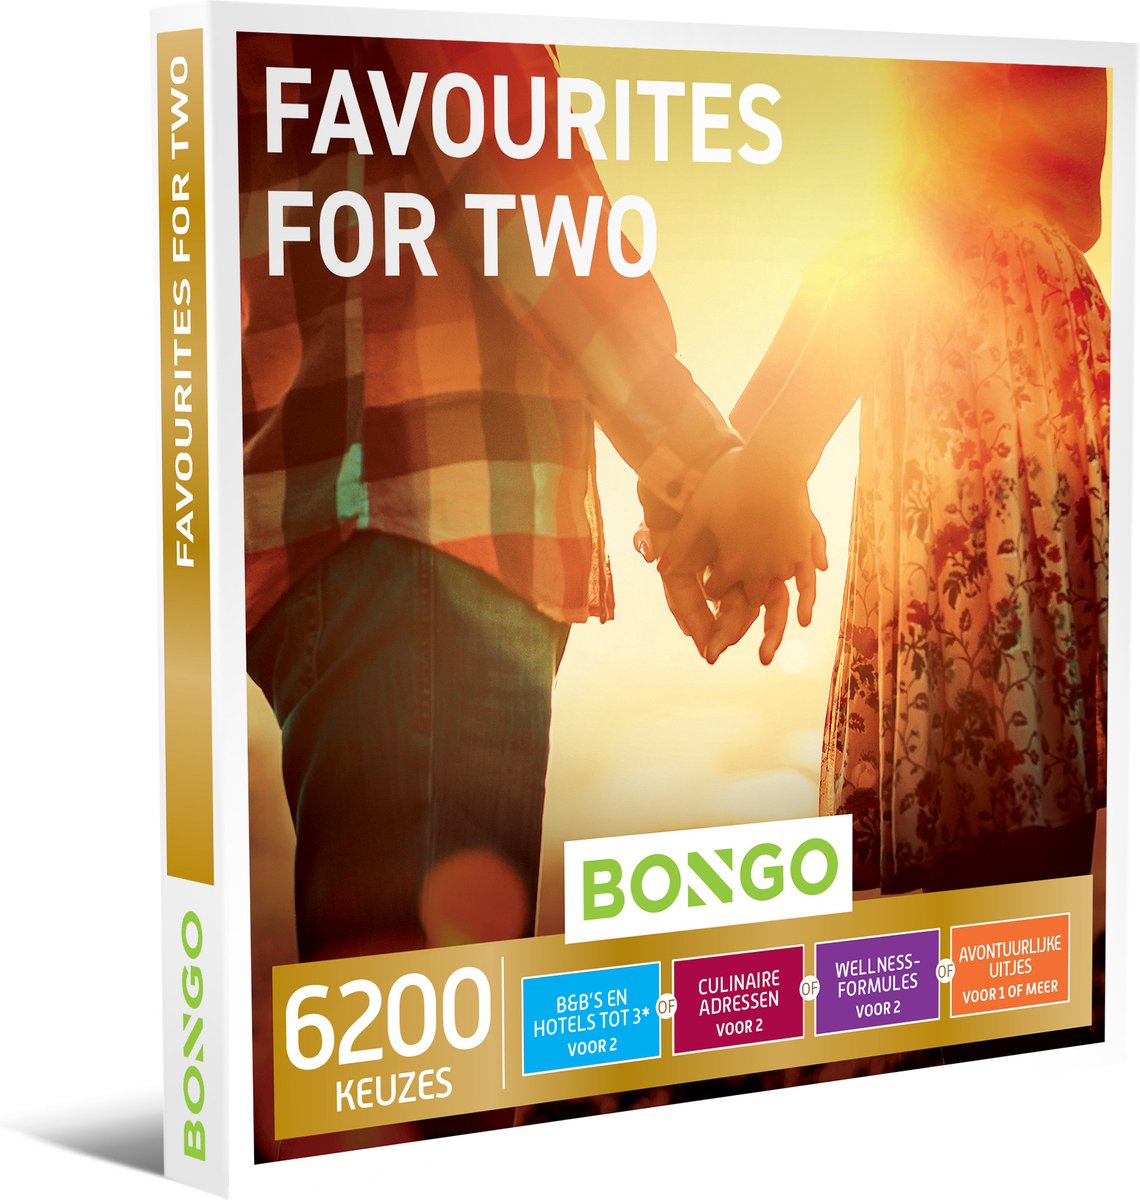 Bongo Bon - Favourites for Two Cadeaubon - Cadeaukaart cadeau voor man of vrouw | 6200 keuzes: overnachting, diner, sportieve uitjes, wellness en meer - Bongo